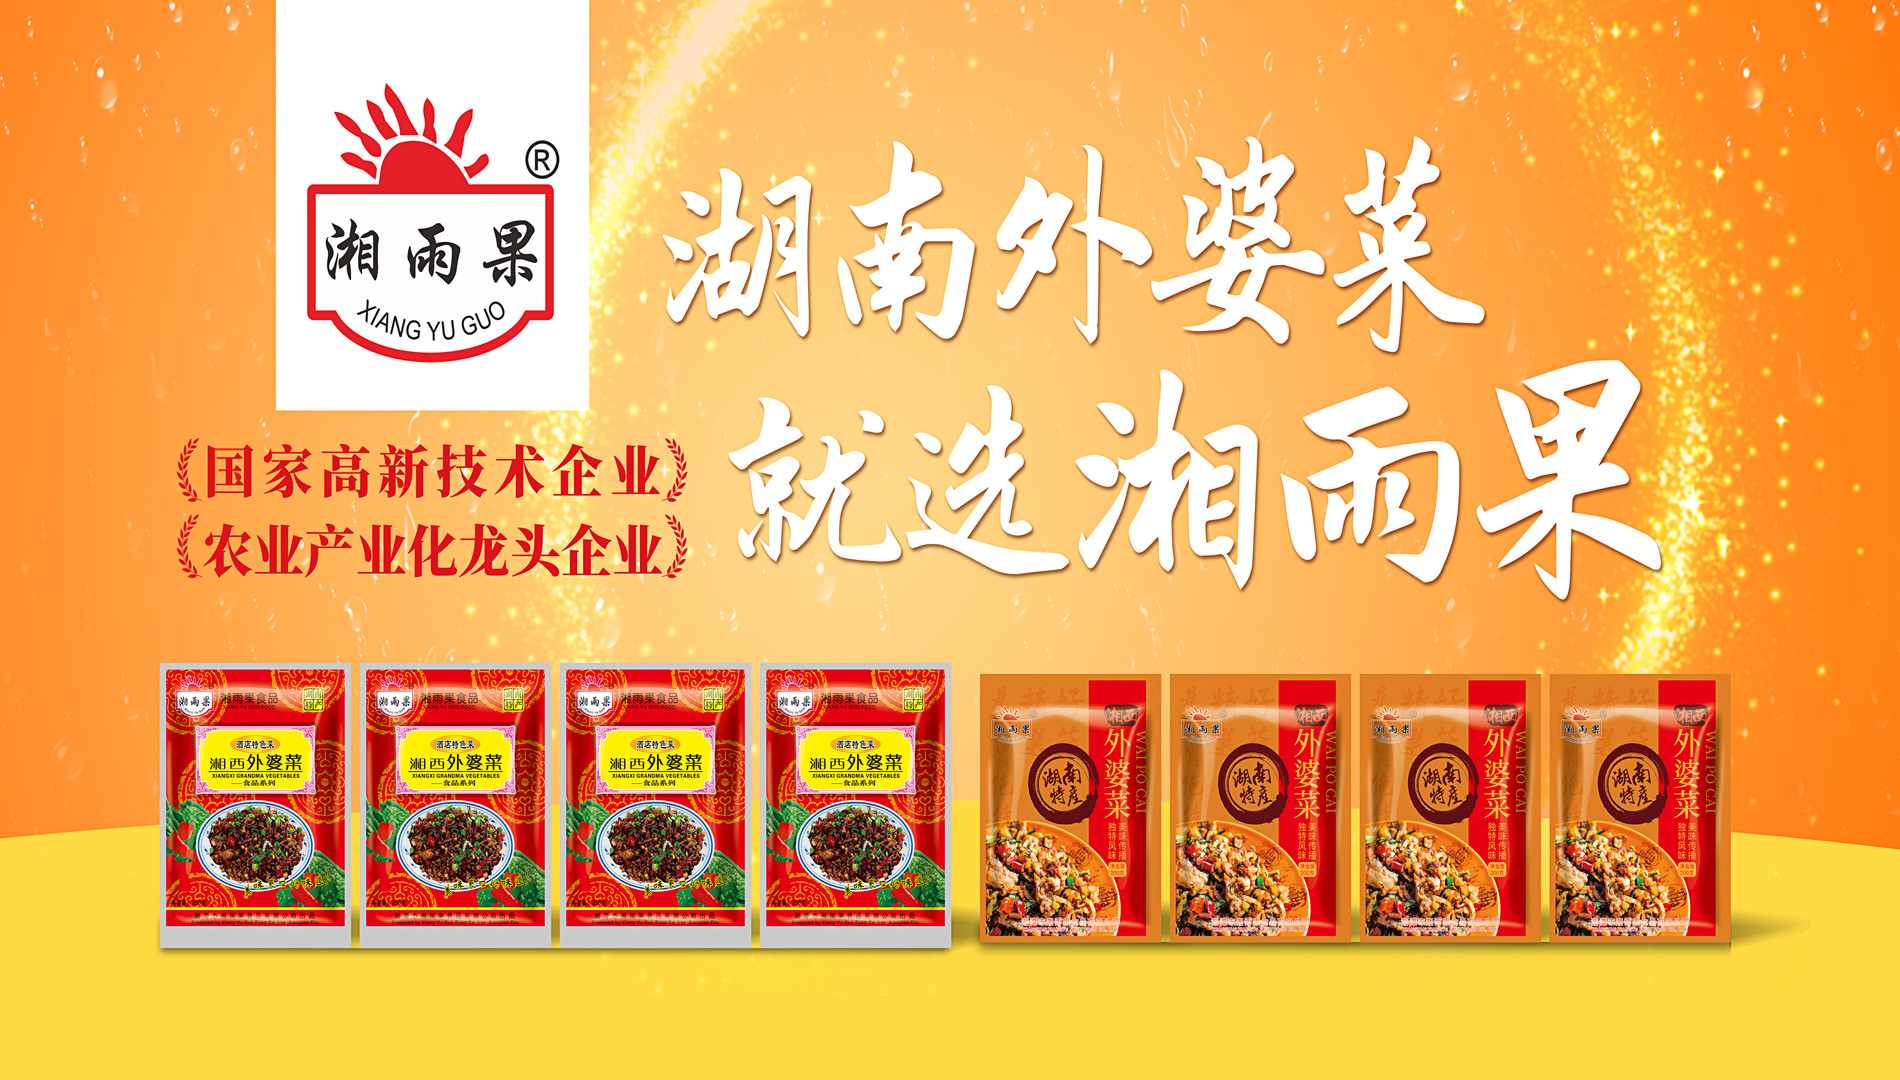 Xiang Yu Guo Food - Întreprindere de referință pentru industria mâncărurilor prefabricate